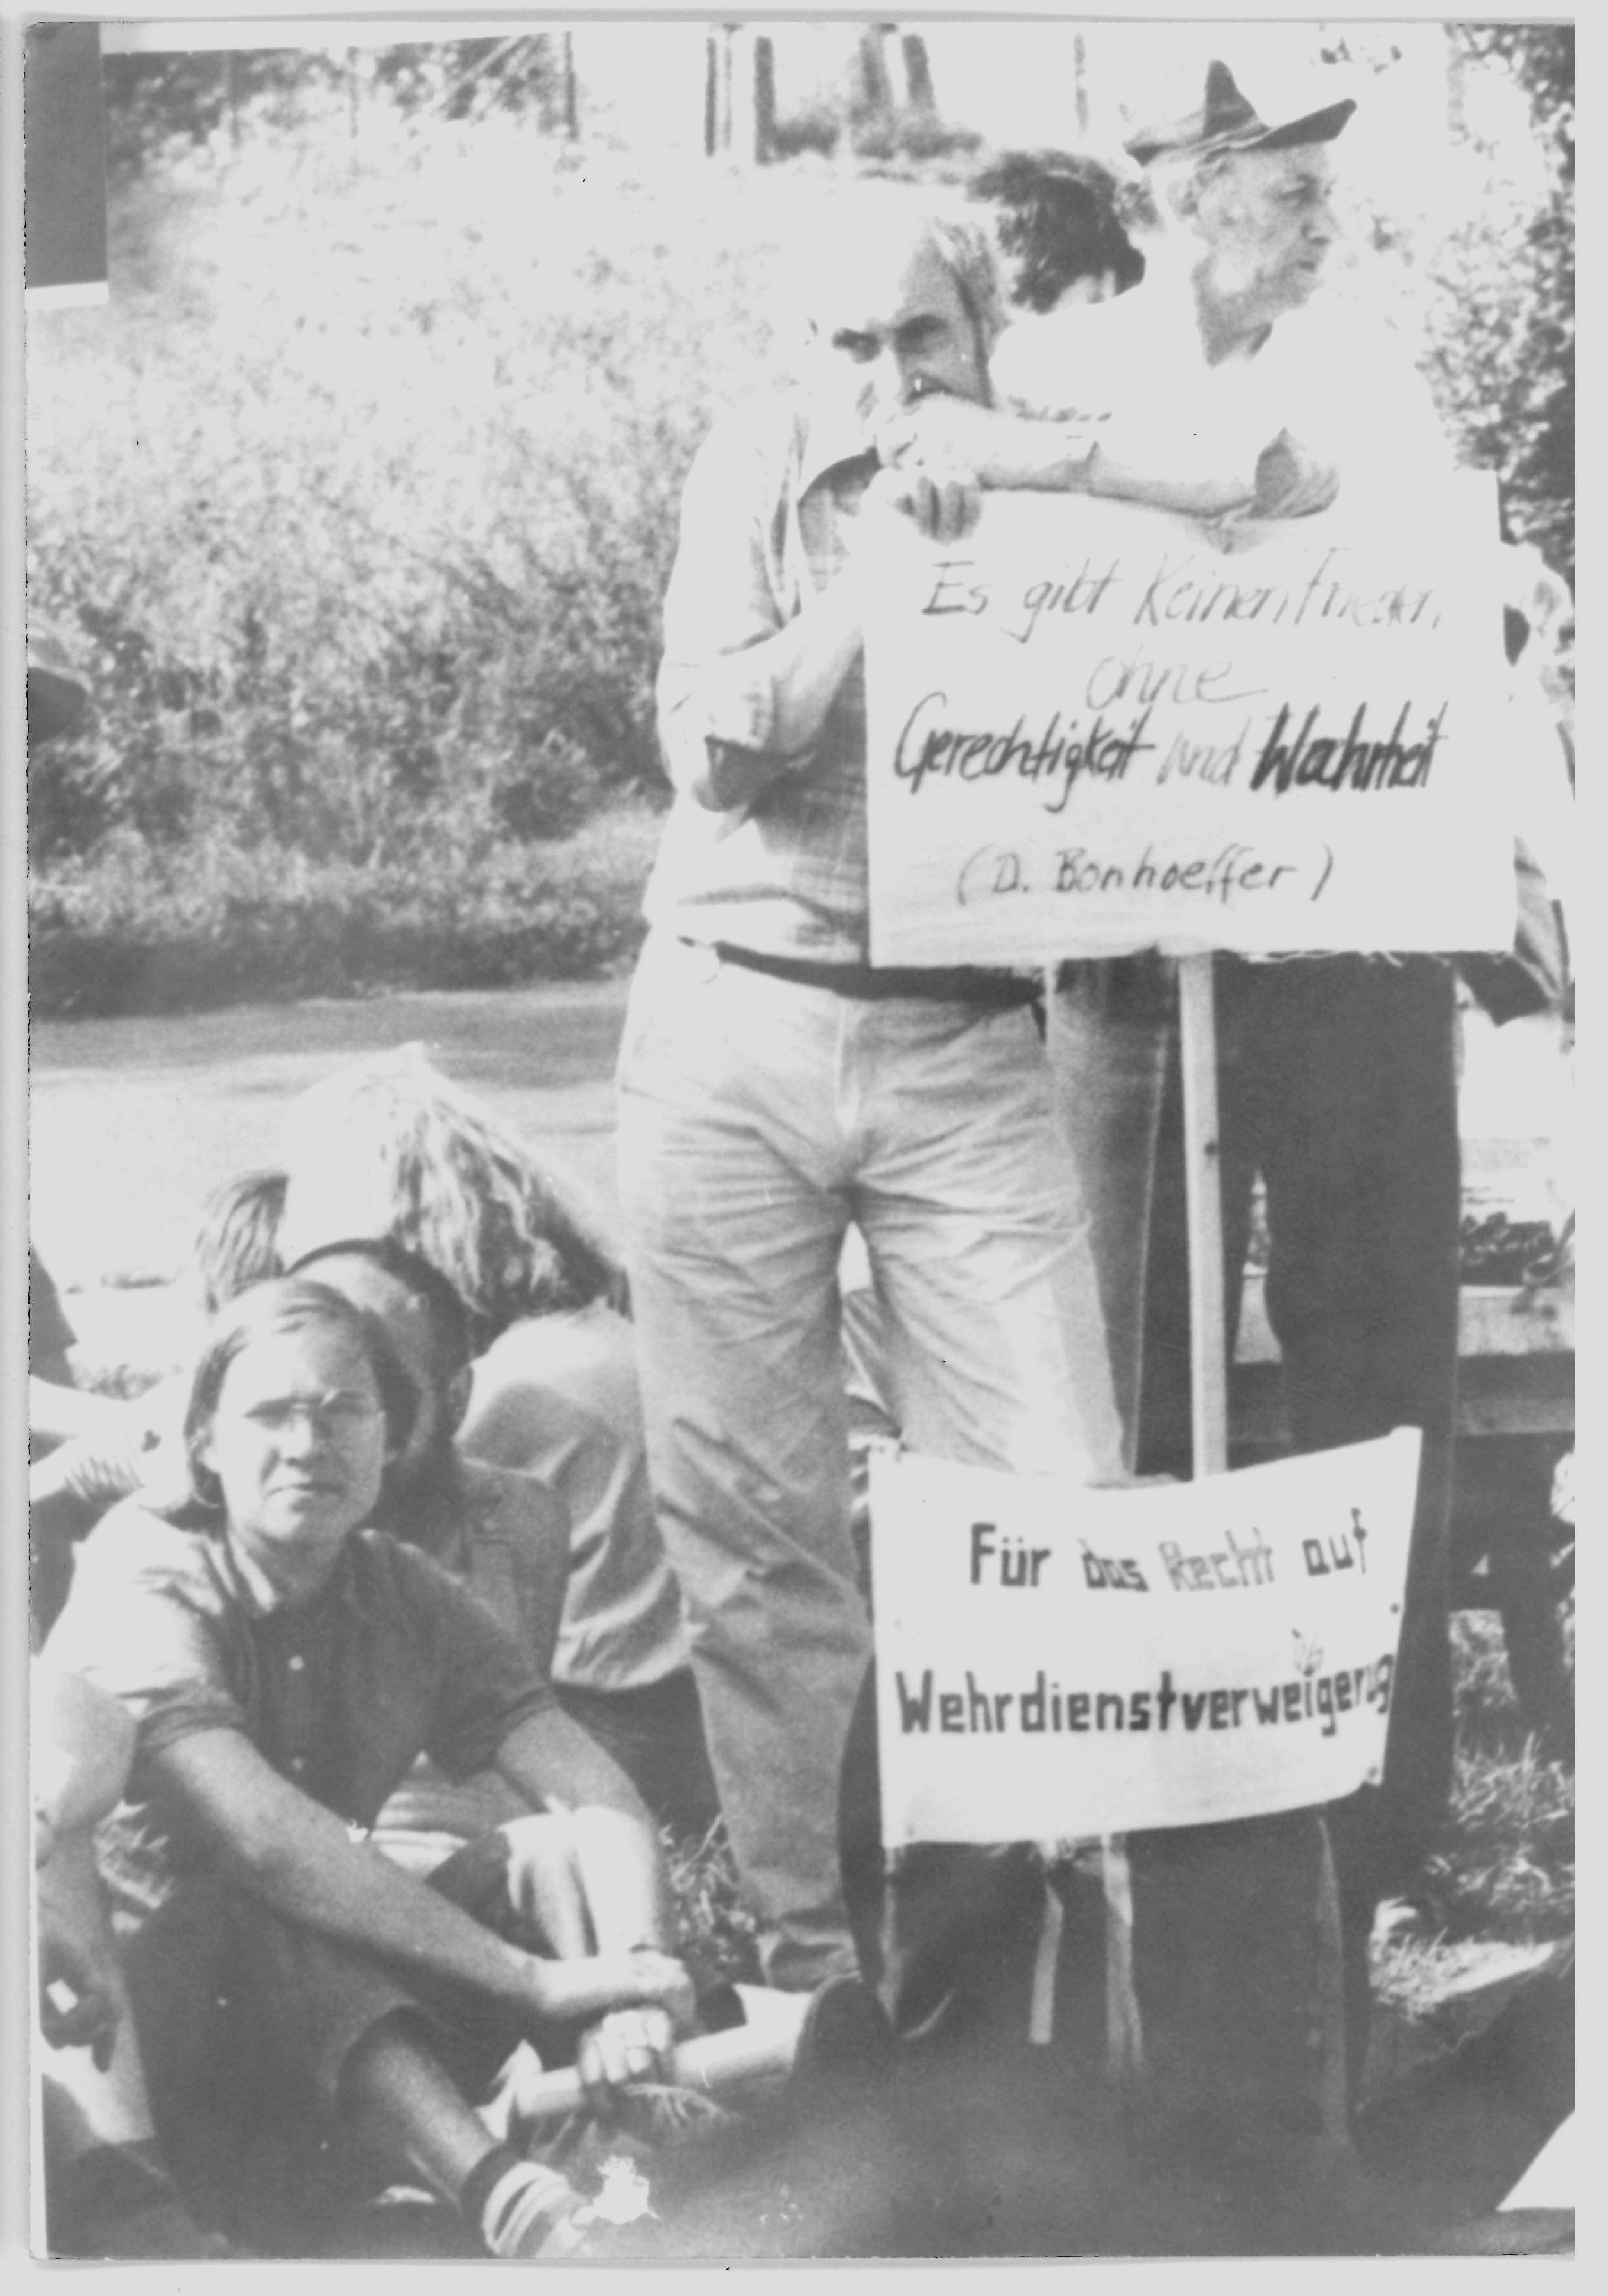 Olof-Palme-Marsch 1987: Plakat mit der Beschriftung: "Es gibt keinen Frieden ohne Gerechtigkeit und Wahrheit (D. Bonhoeffer)" (DDR Geschichtsmuseum im Dokumentationszentrum Perleberg CC BY-SA)